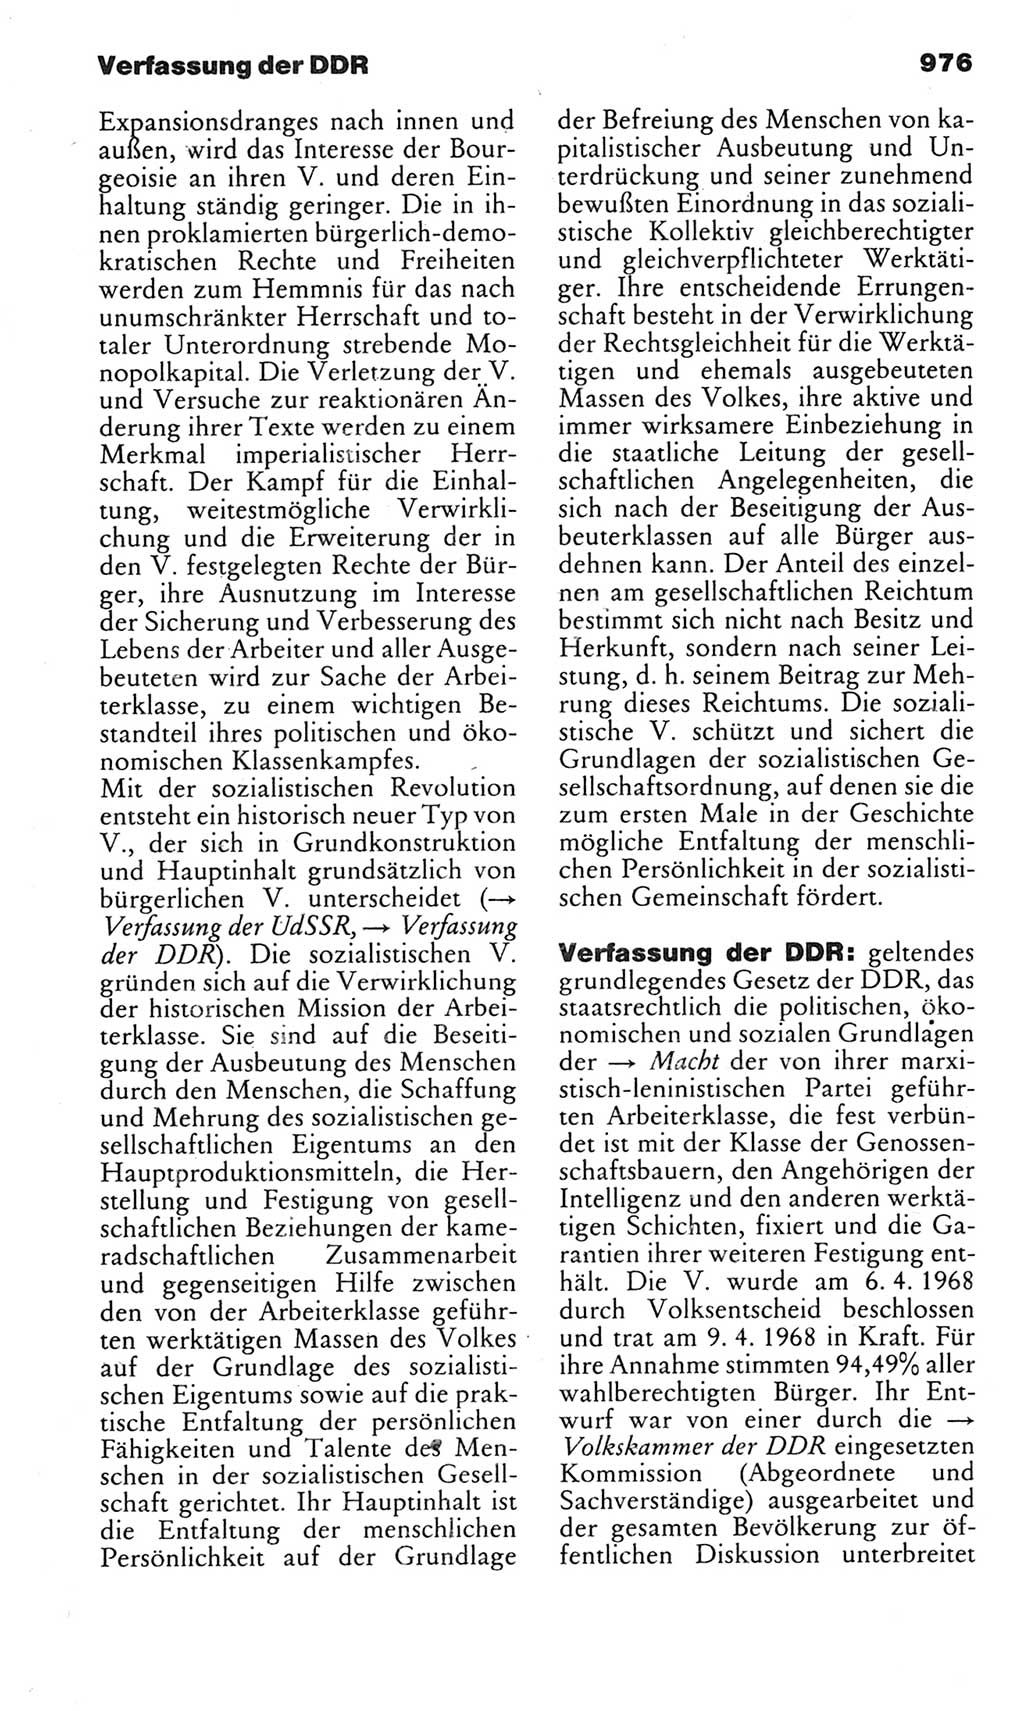 Kleines politisches Wörterbuch [Deutsche Demokratische Republik (DDR)] 1983, Seite 976 (Kl. pol. Wb. DDR 1983, S. 976)